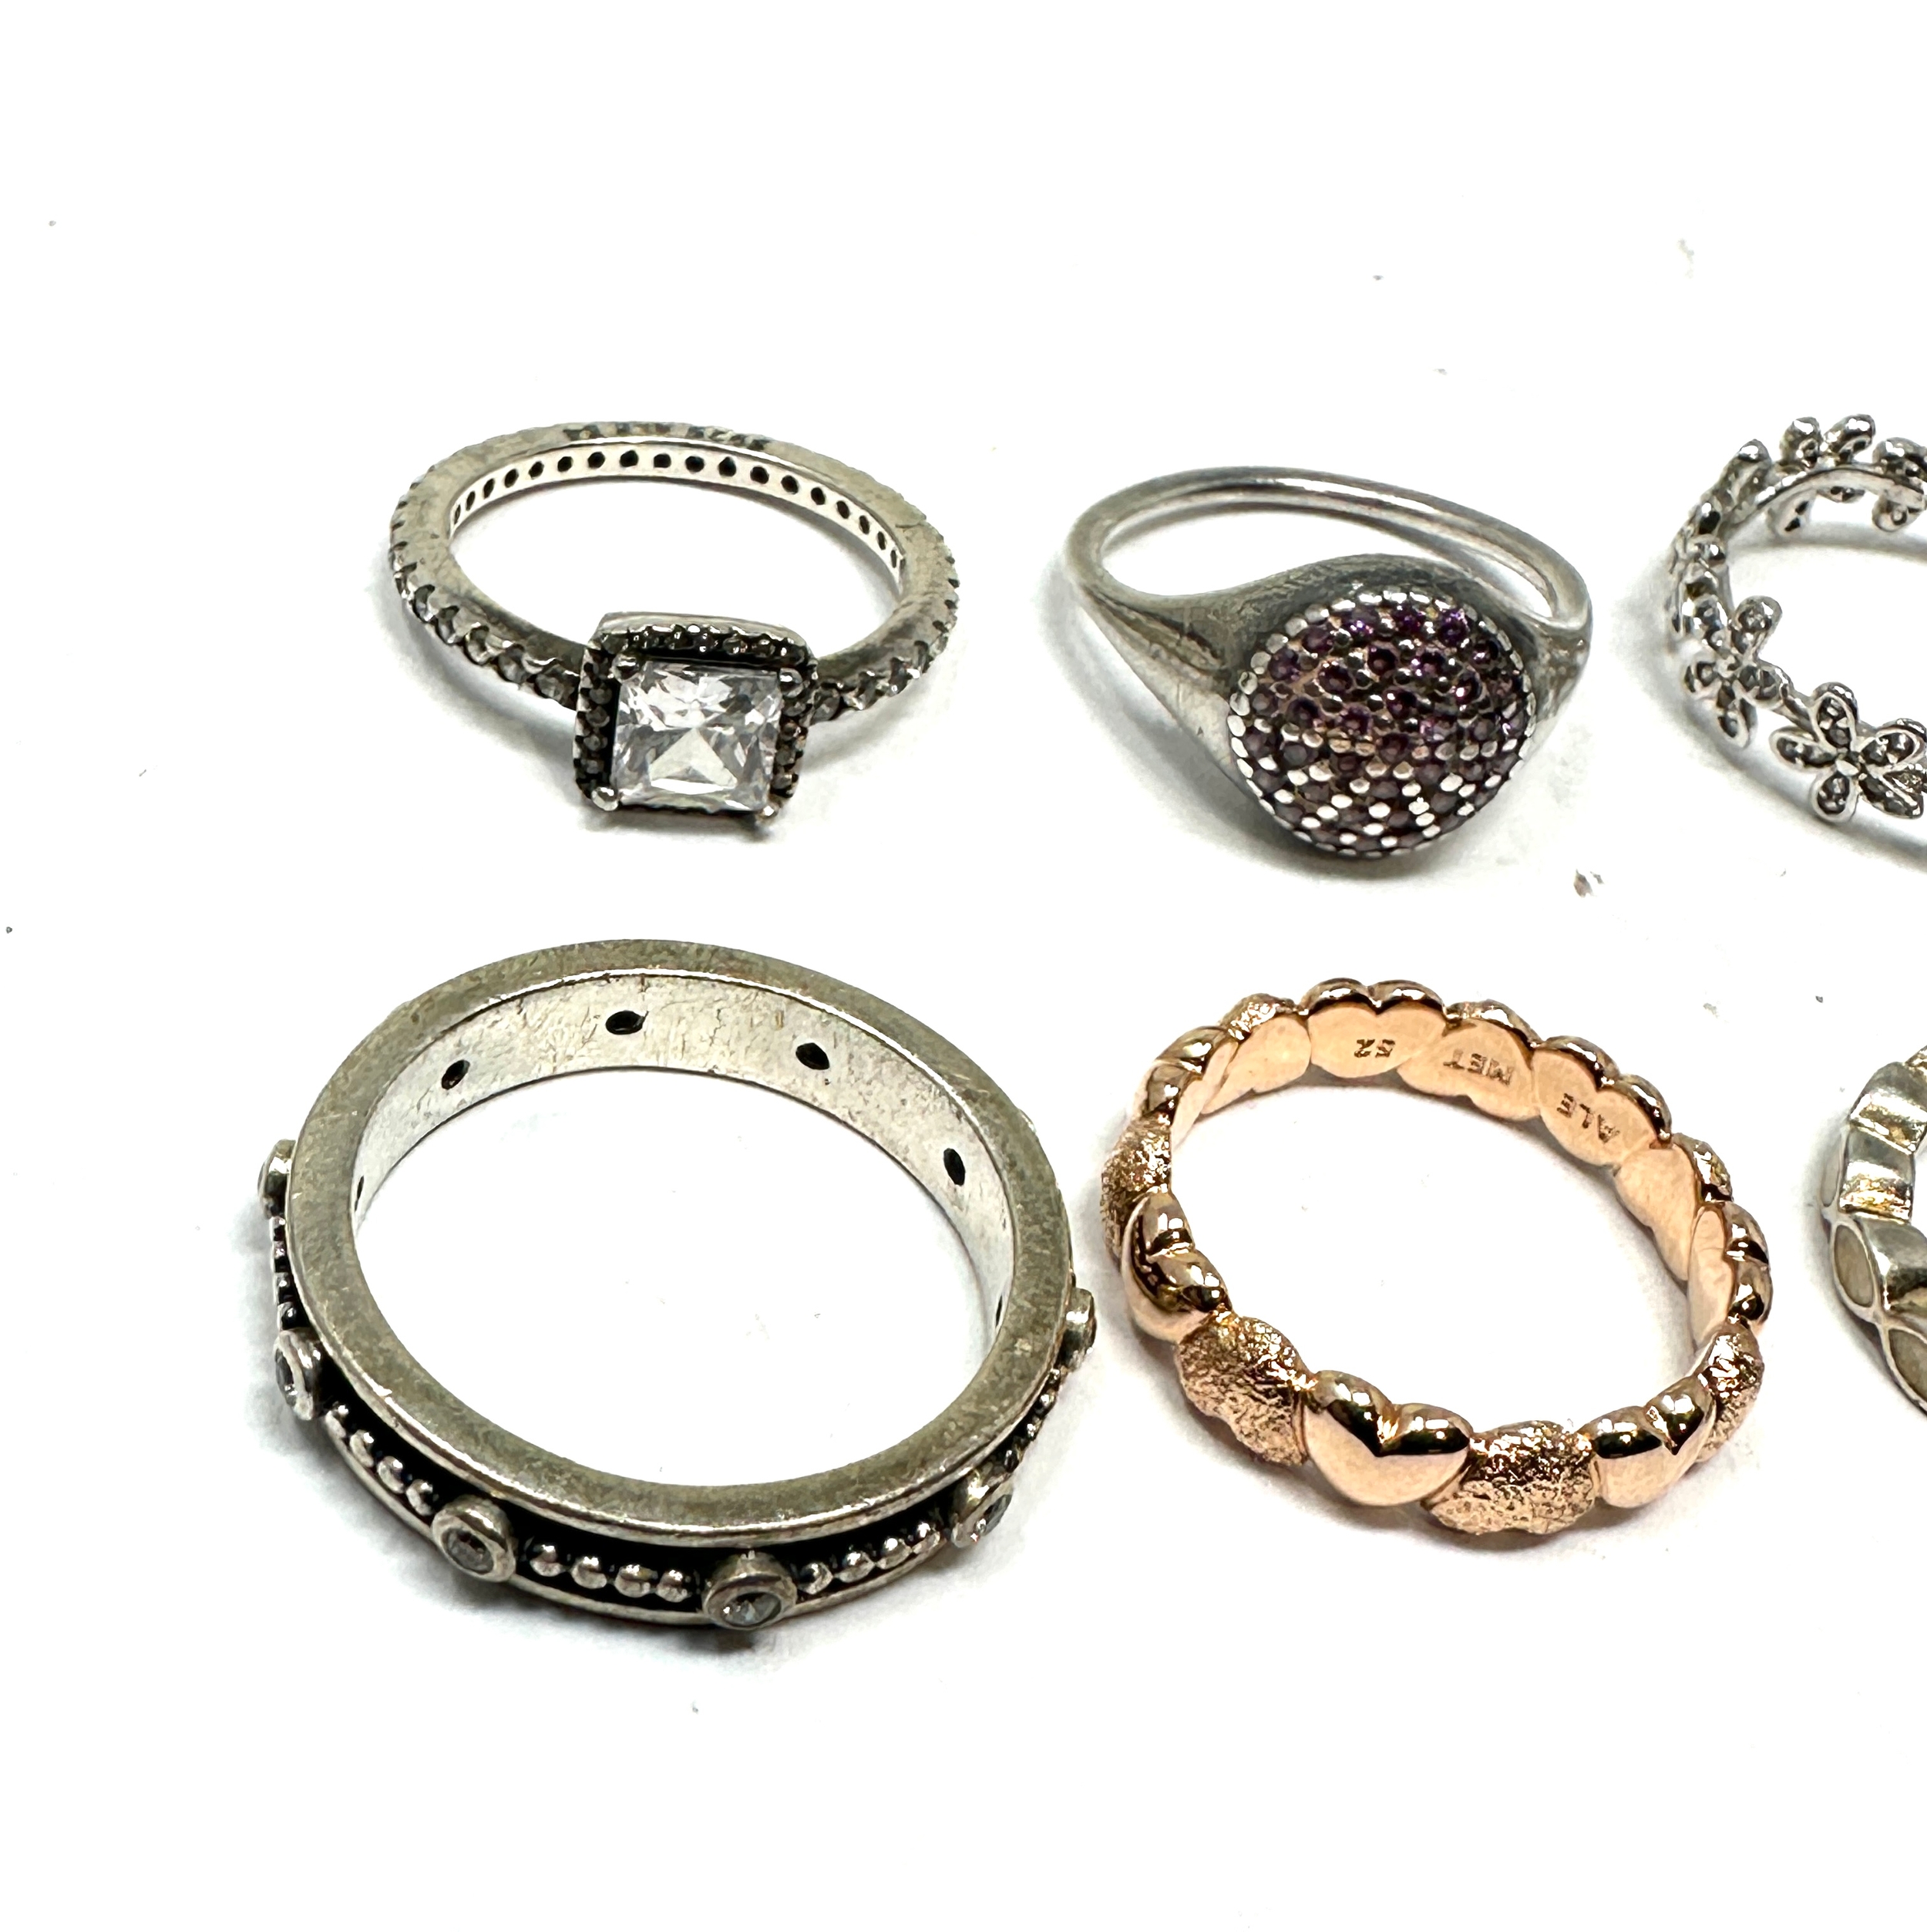 6 silver pandora rings - Image 2 of 3